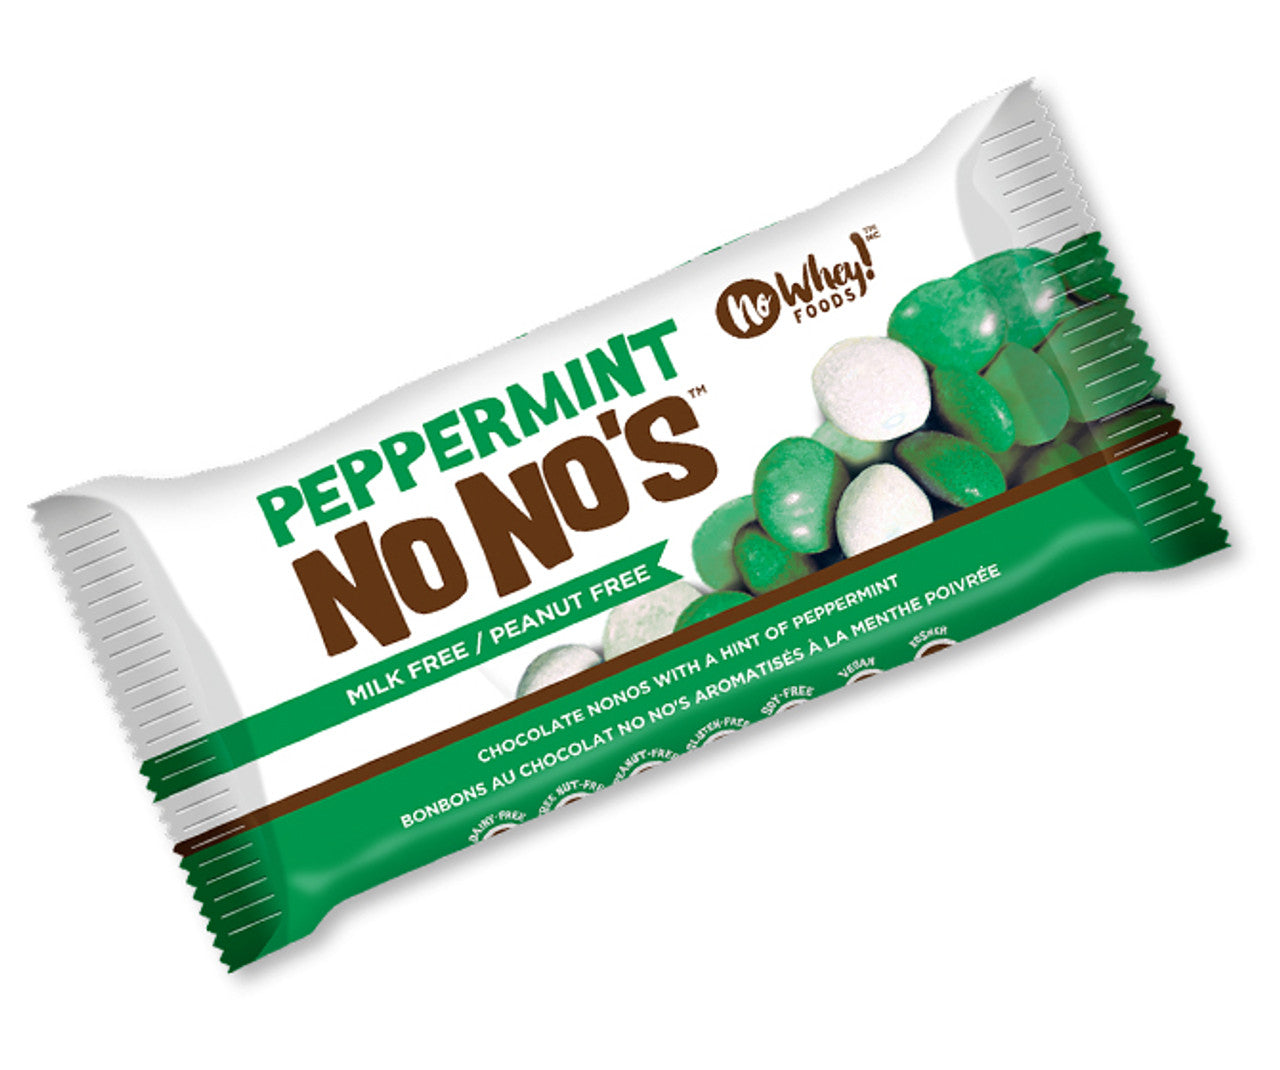 Peppermint No No's